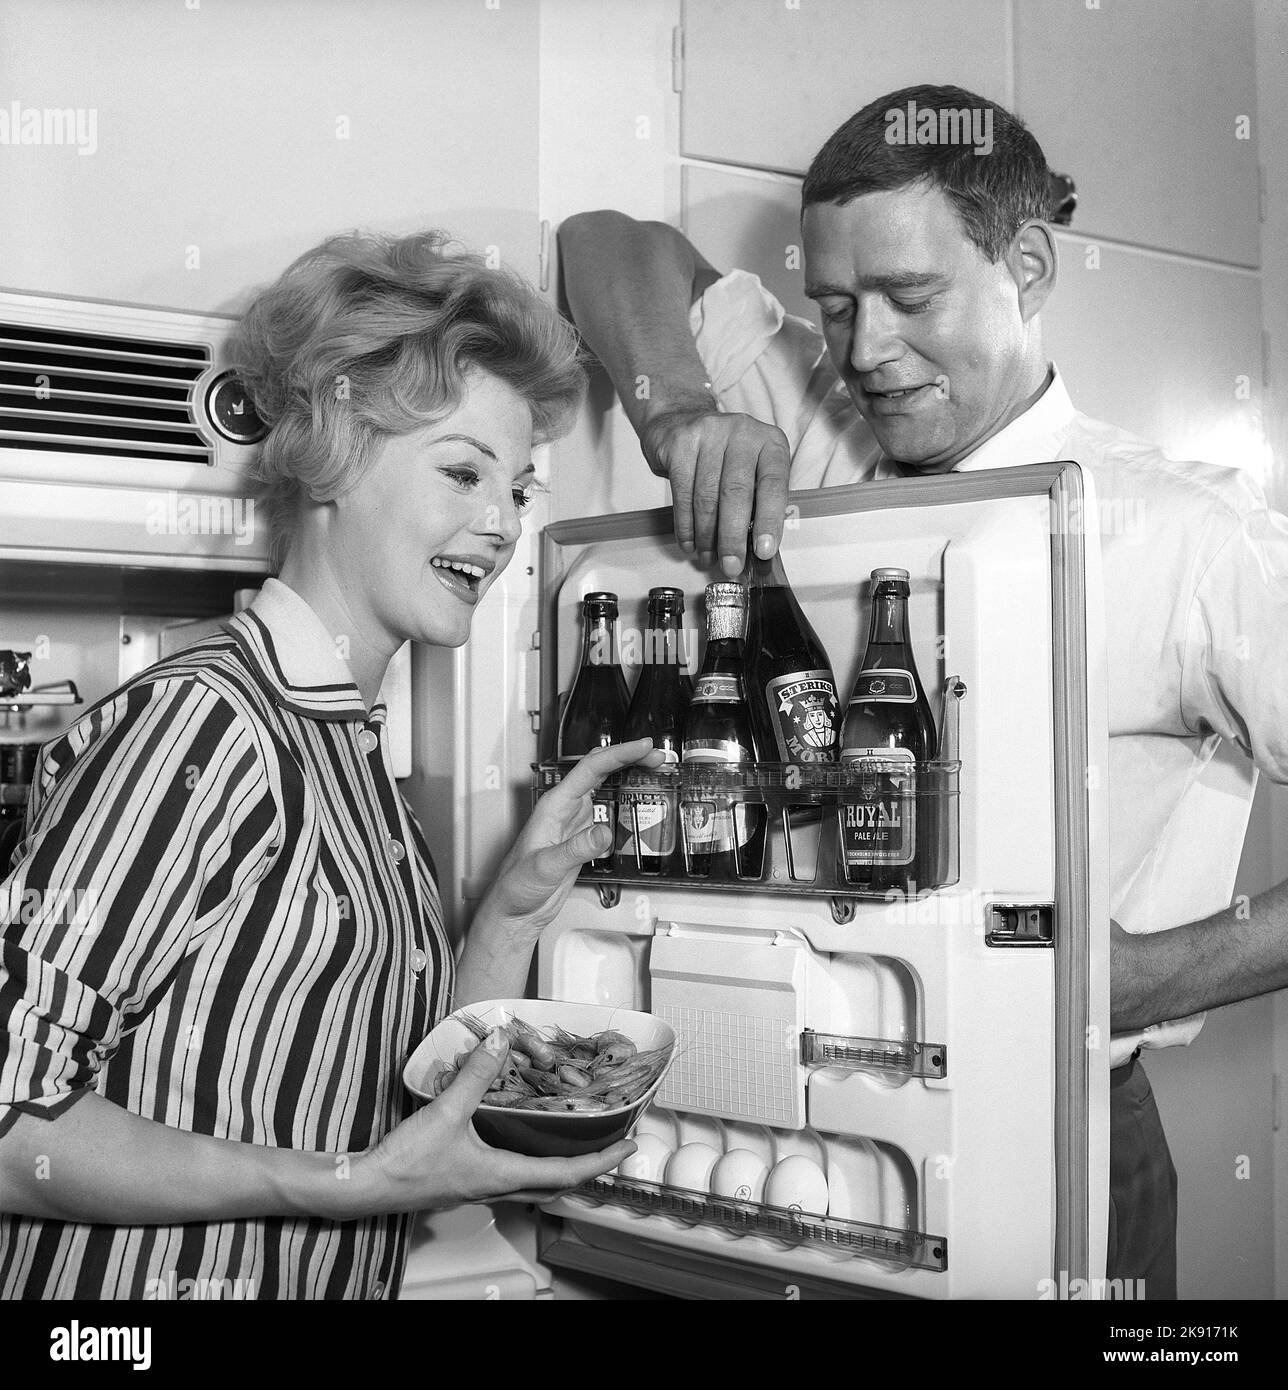 In cucina 1950s. Una coppia in cucina e nel frigorifero dove la birra è tenuta nella mensola della porta. Si vedono cinque bottiglie di birra. La signora tiene una ciotola di gamberetti. Svezia 1959. Kristoffersson rif CH77-1 Foto Stock